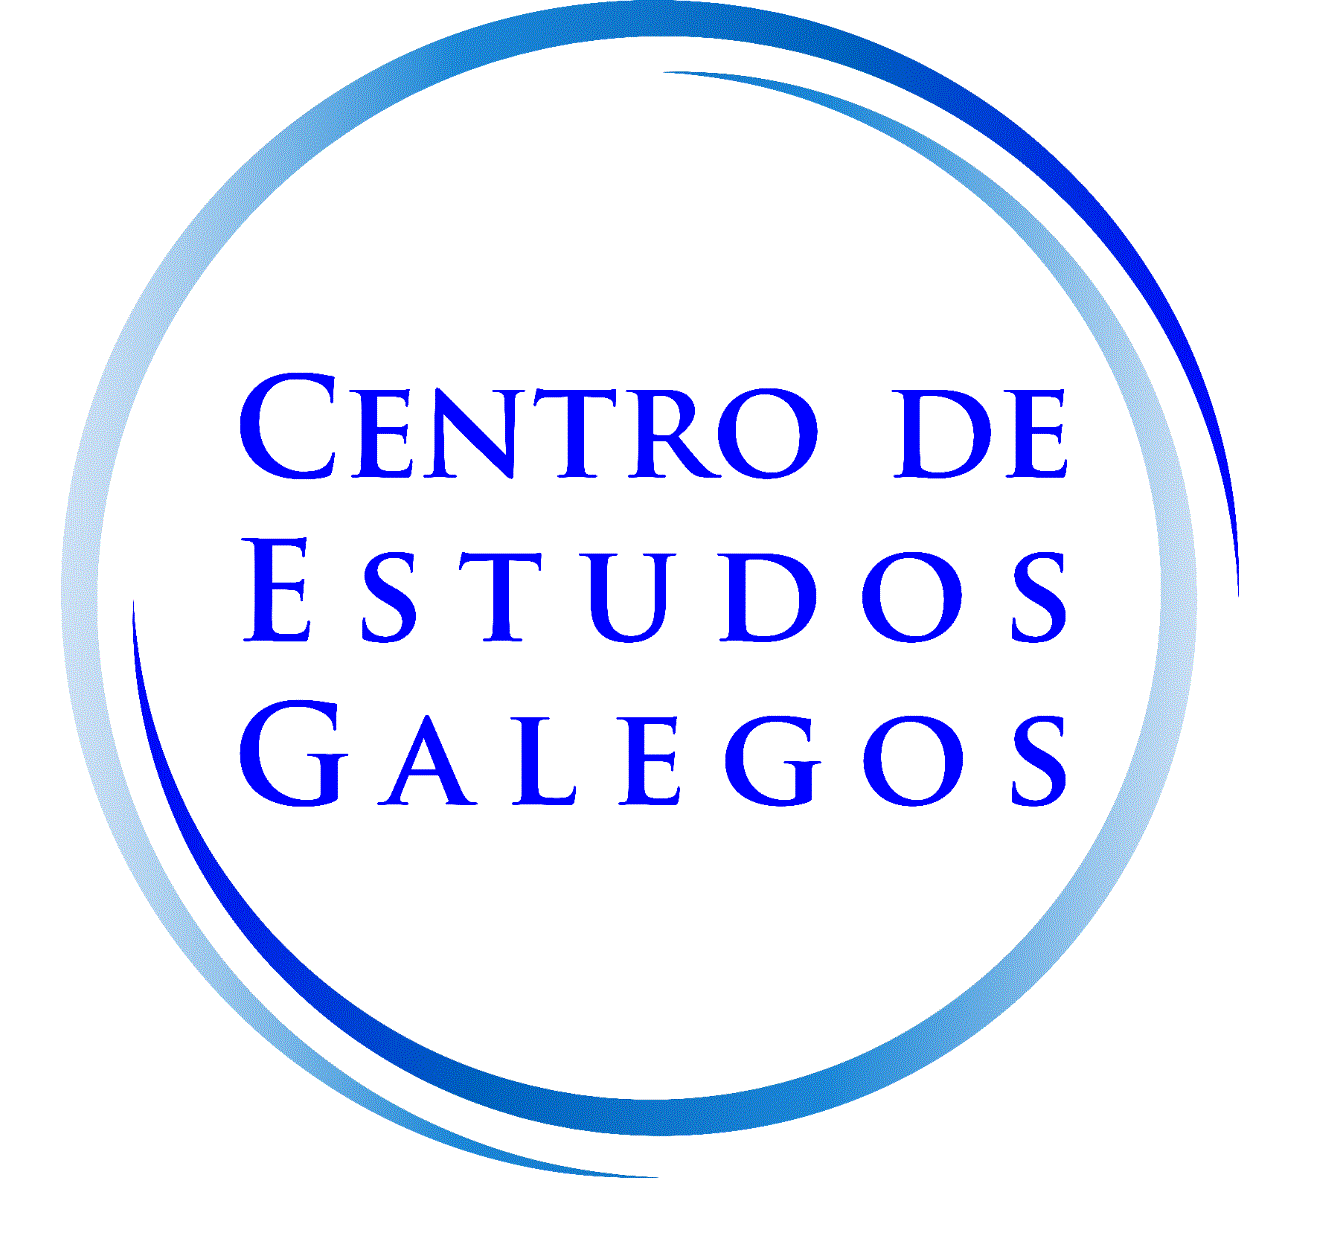 Centro de Estudos Galegos (CEG)